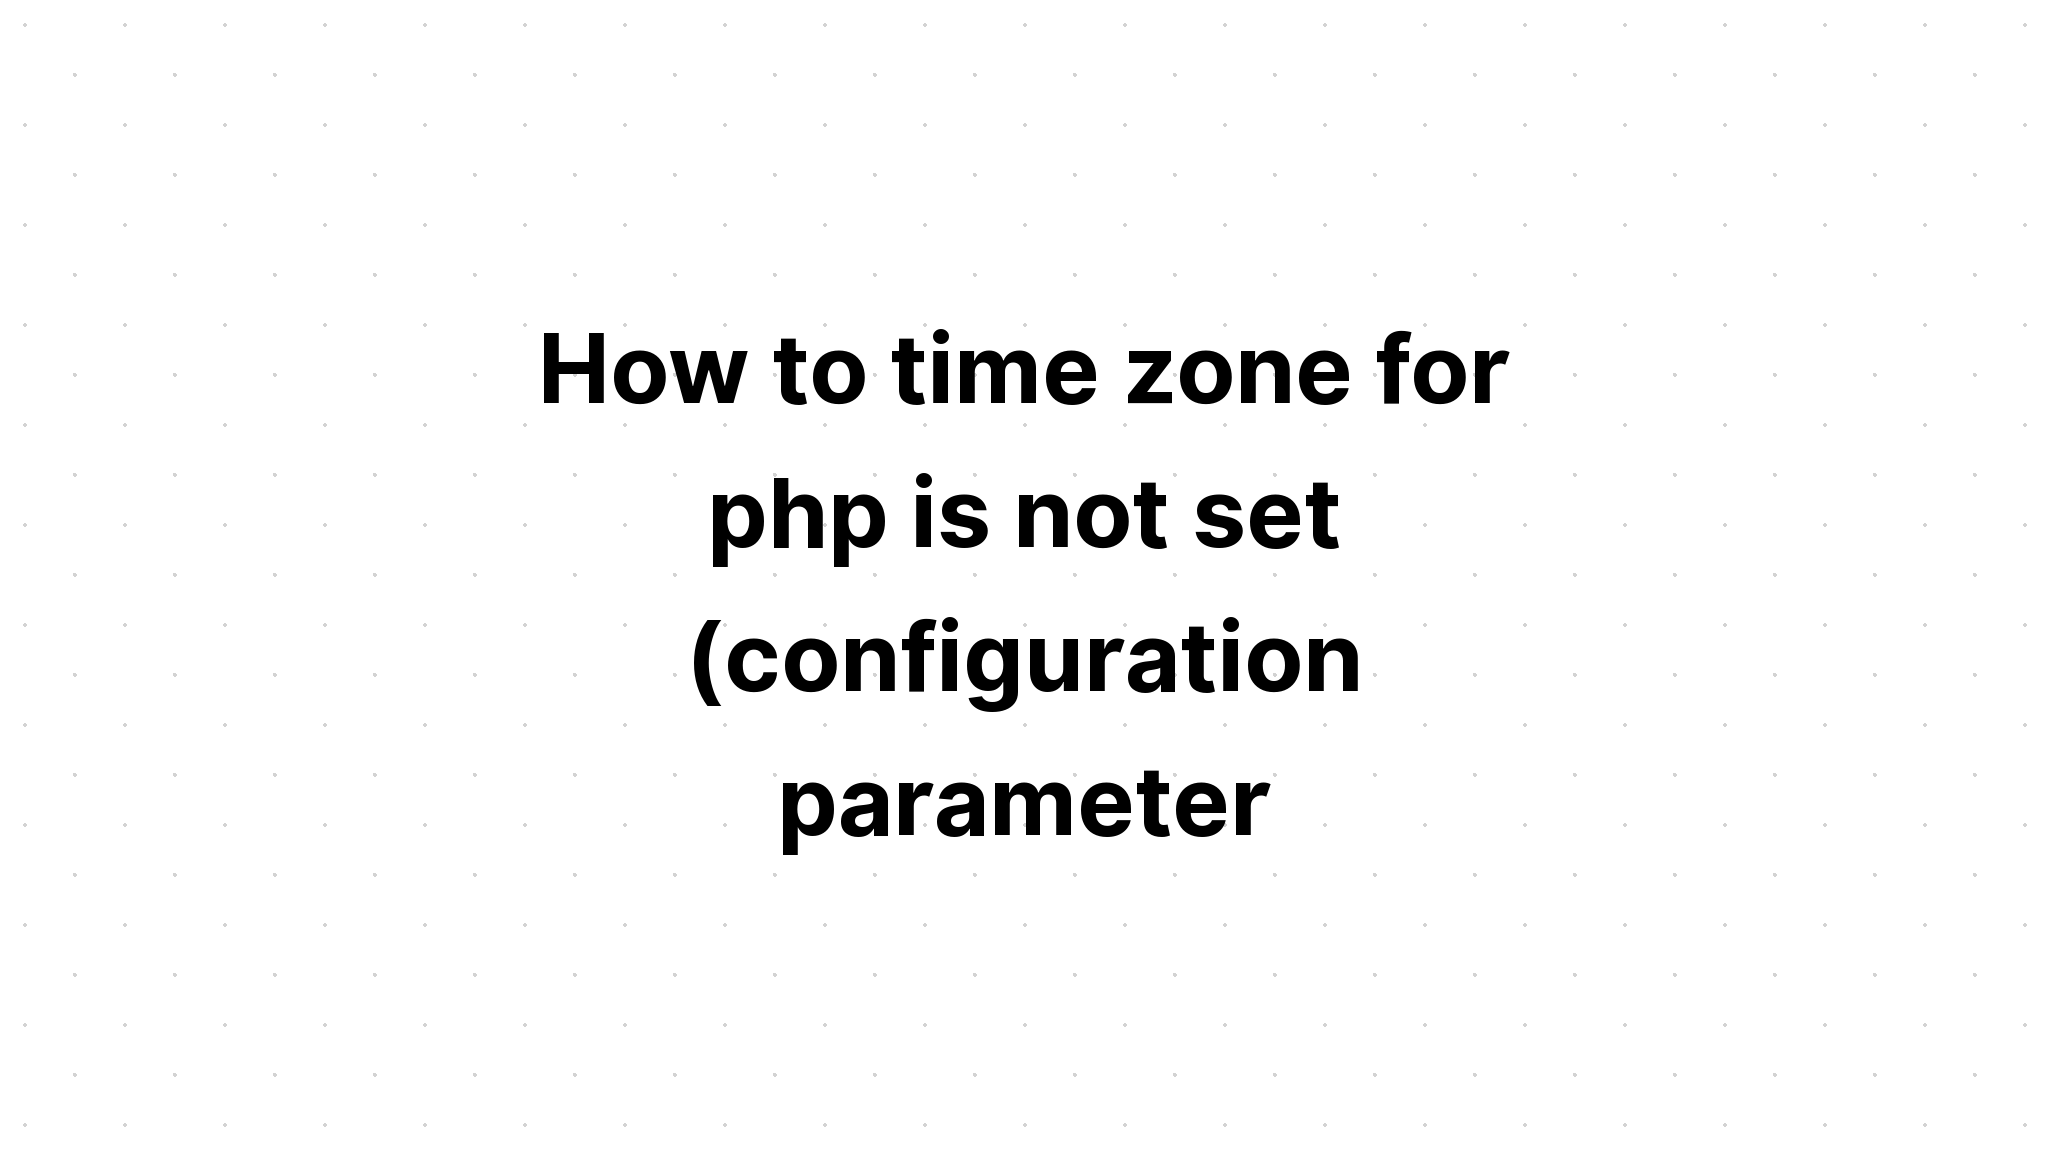 Bagaimana zona waktu untuk php tidak diatur (parameter konfigurasi 